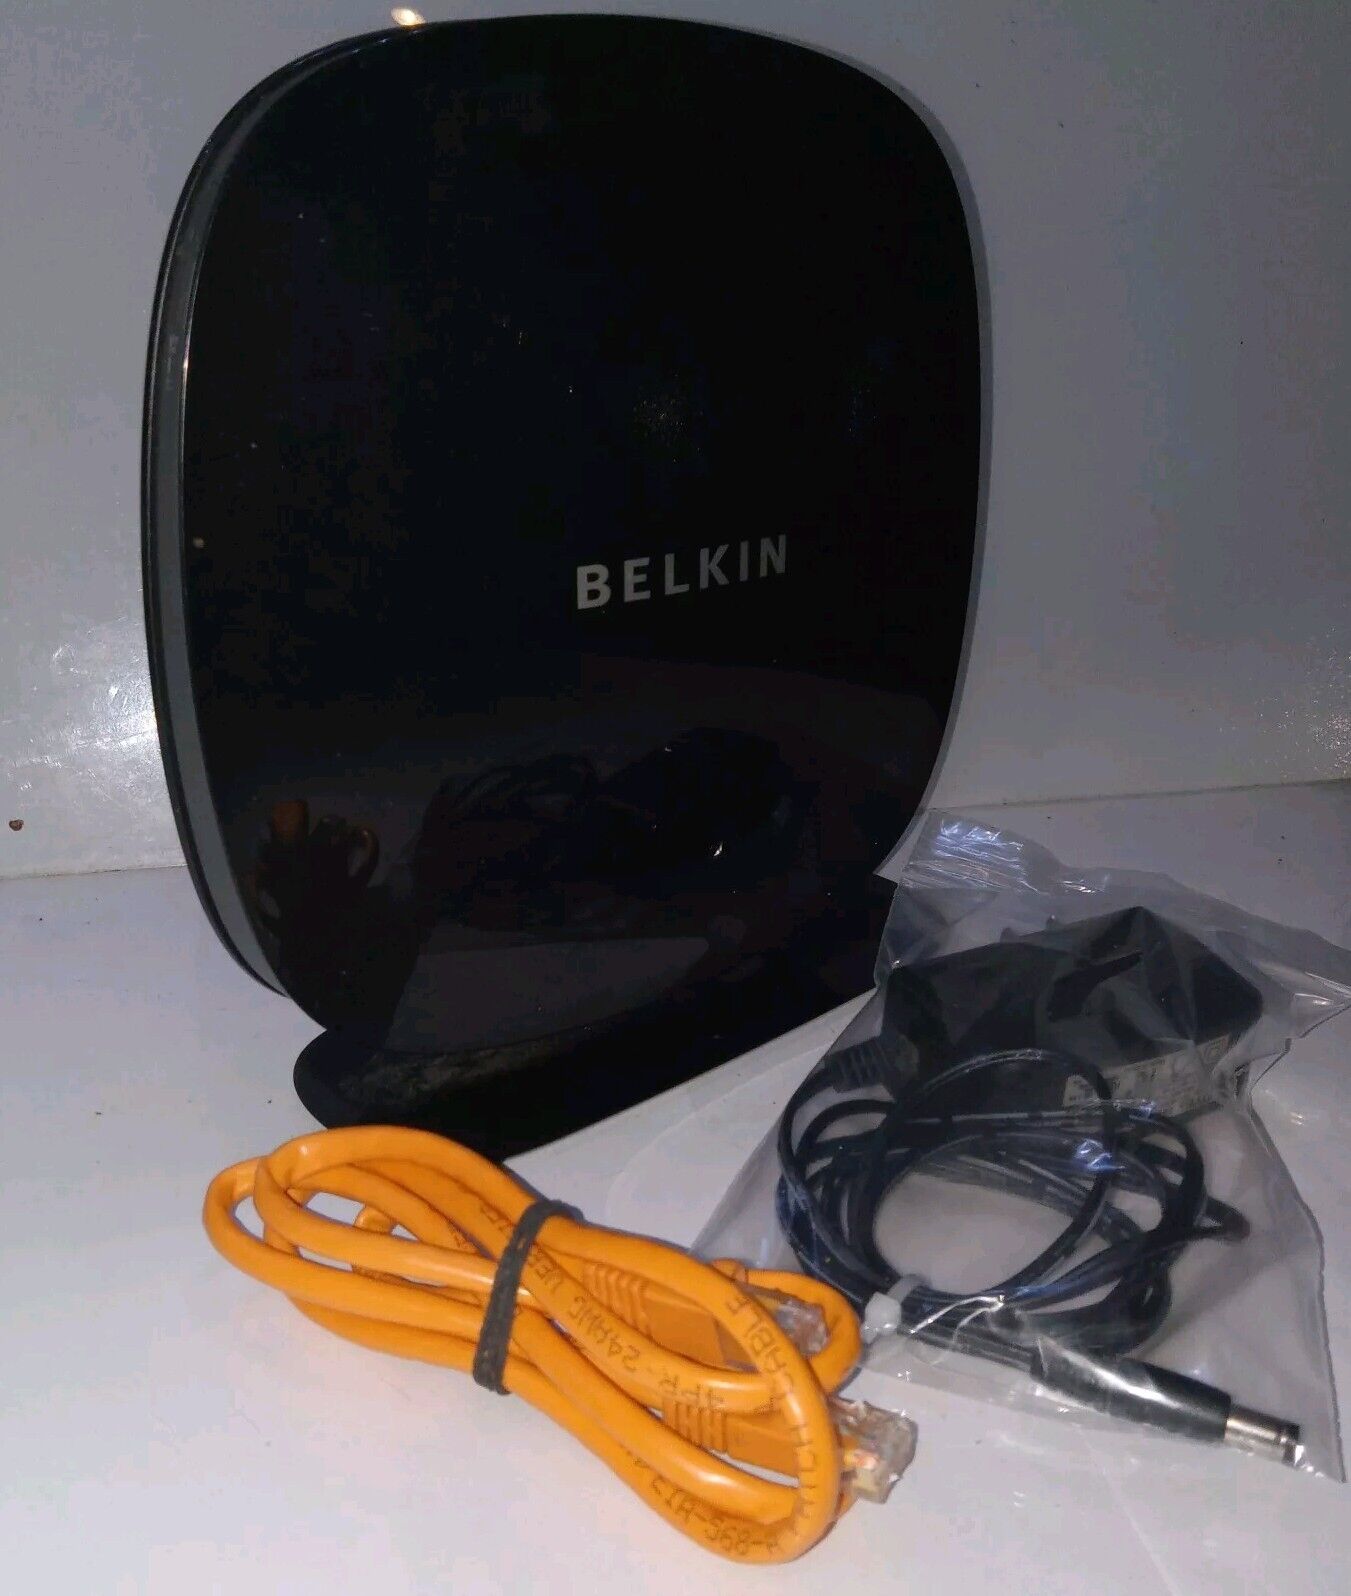 Belkin N600 DB Wireless N+ Router, Model F9K1102V1